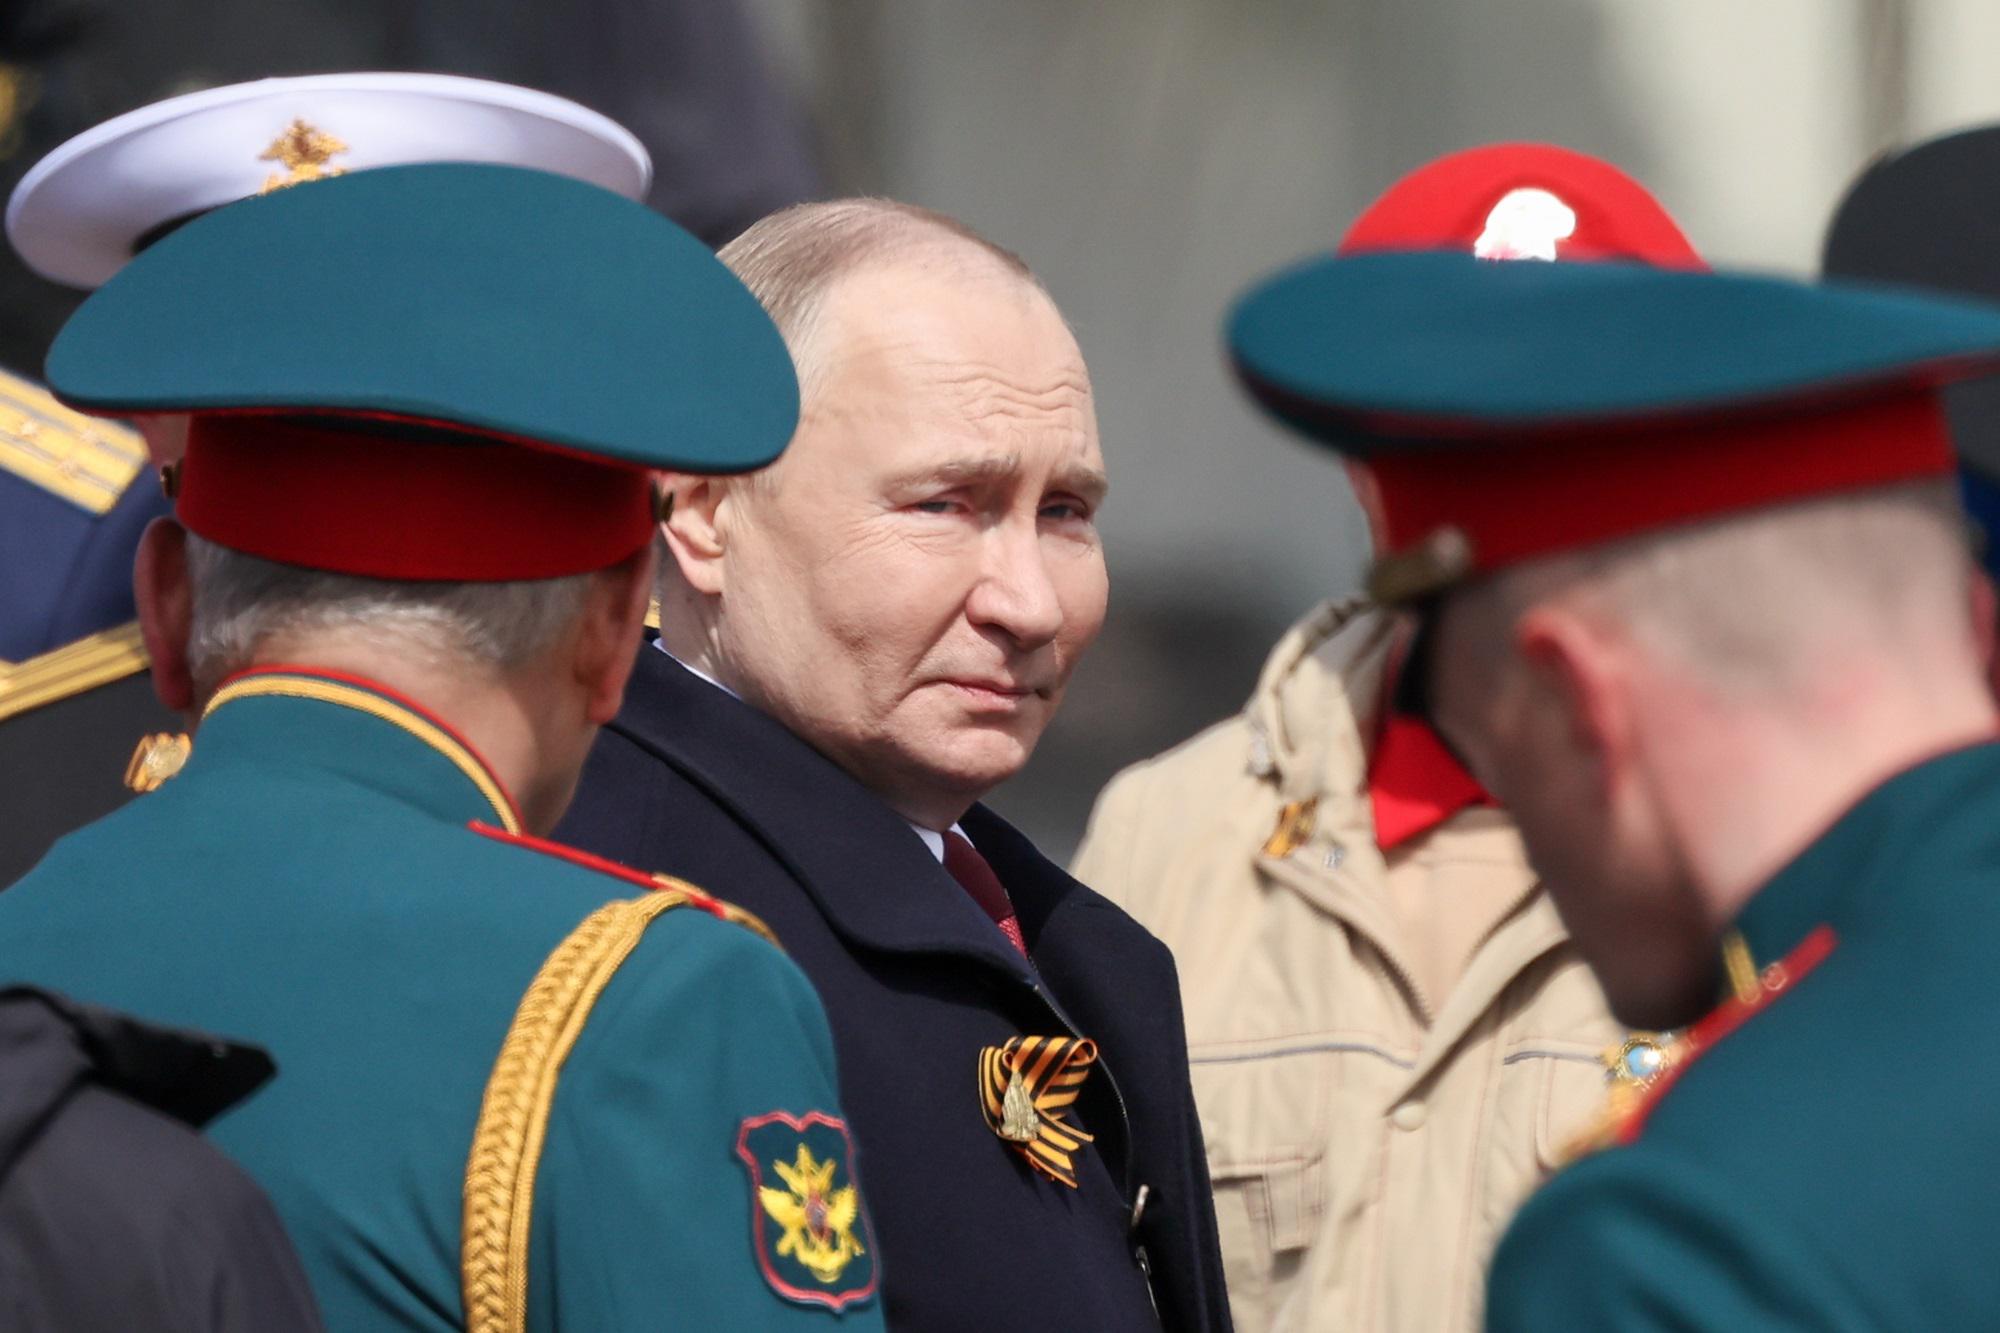 Putin - Russia aumenta misure di sicurezza per proteggere presidente